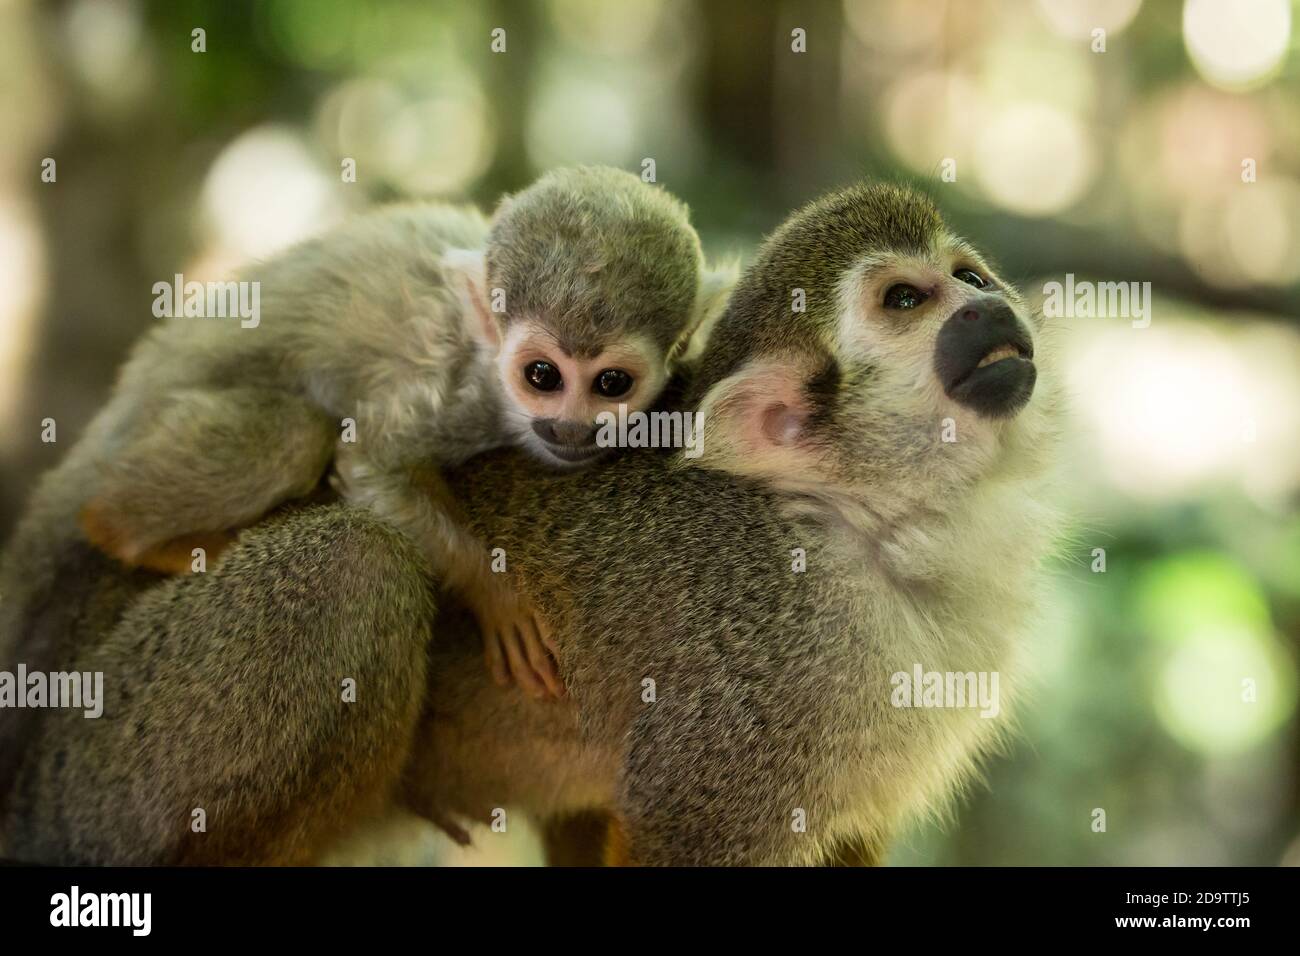 Les Monkeys de l'Équirrel, Saimiri sciurus, en liberté, dans une réserve naturelle dans la forêt tropicale de la République dominicaine. Originaire du bassin de l'Amazone. Banque D'Images